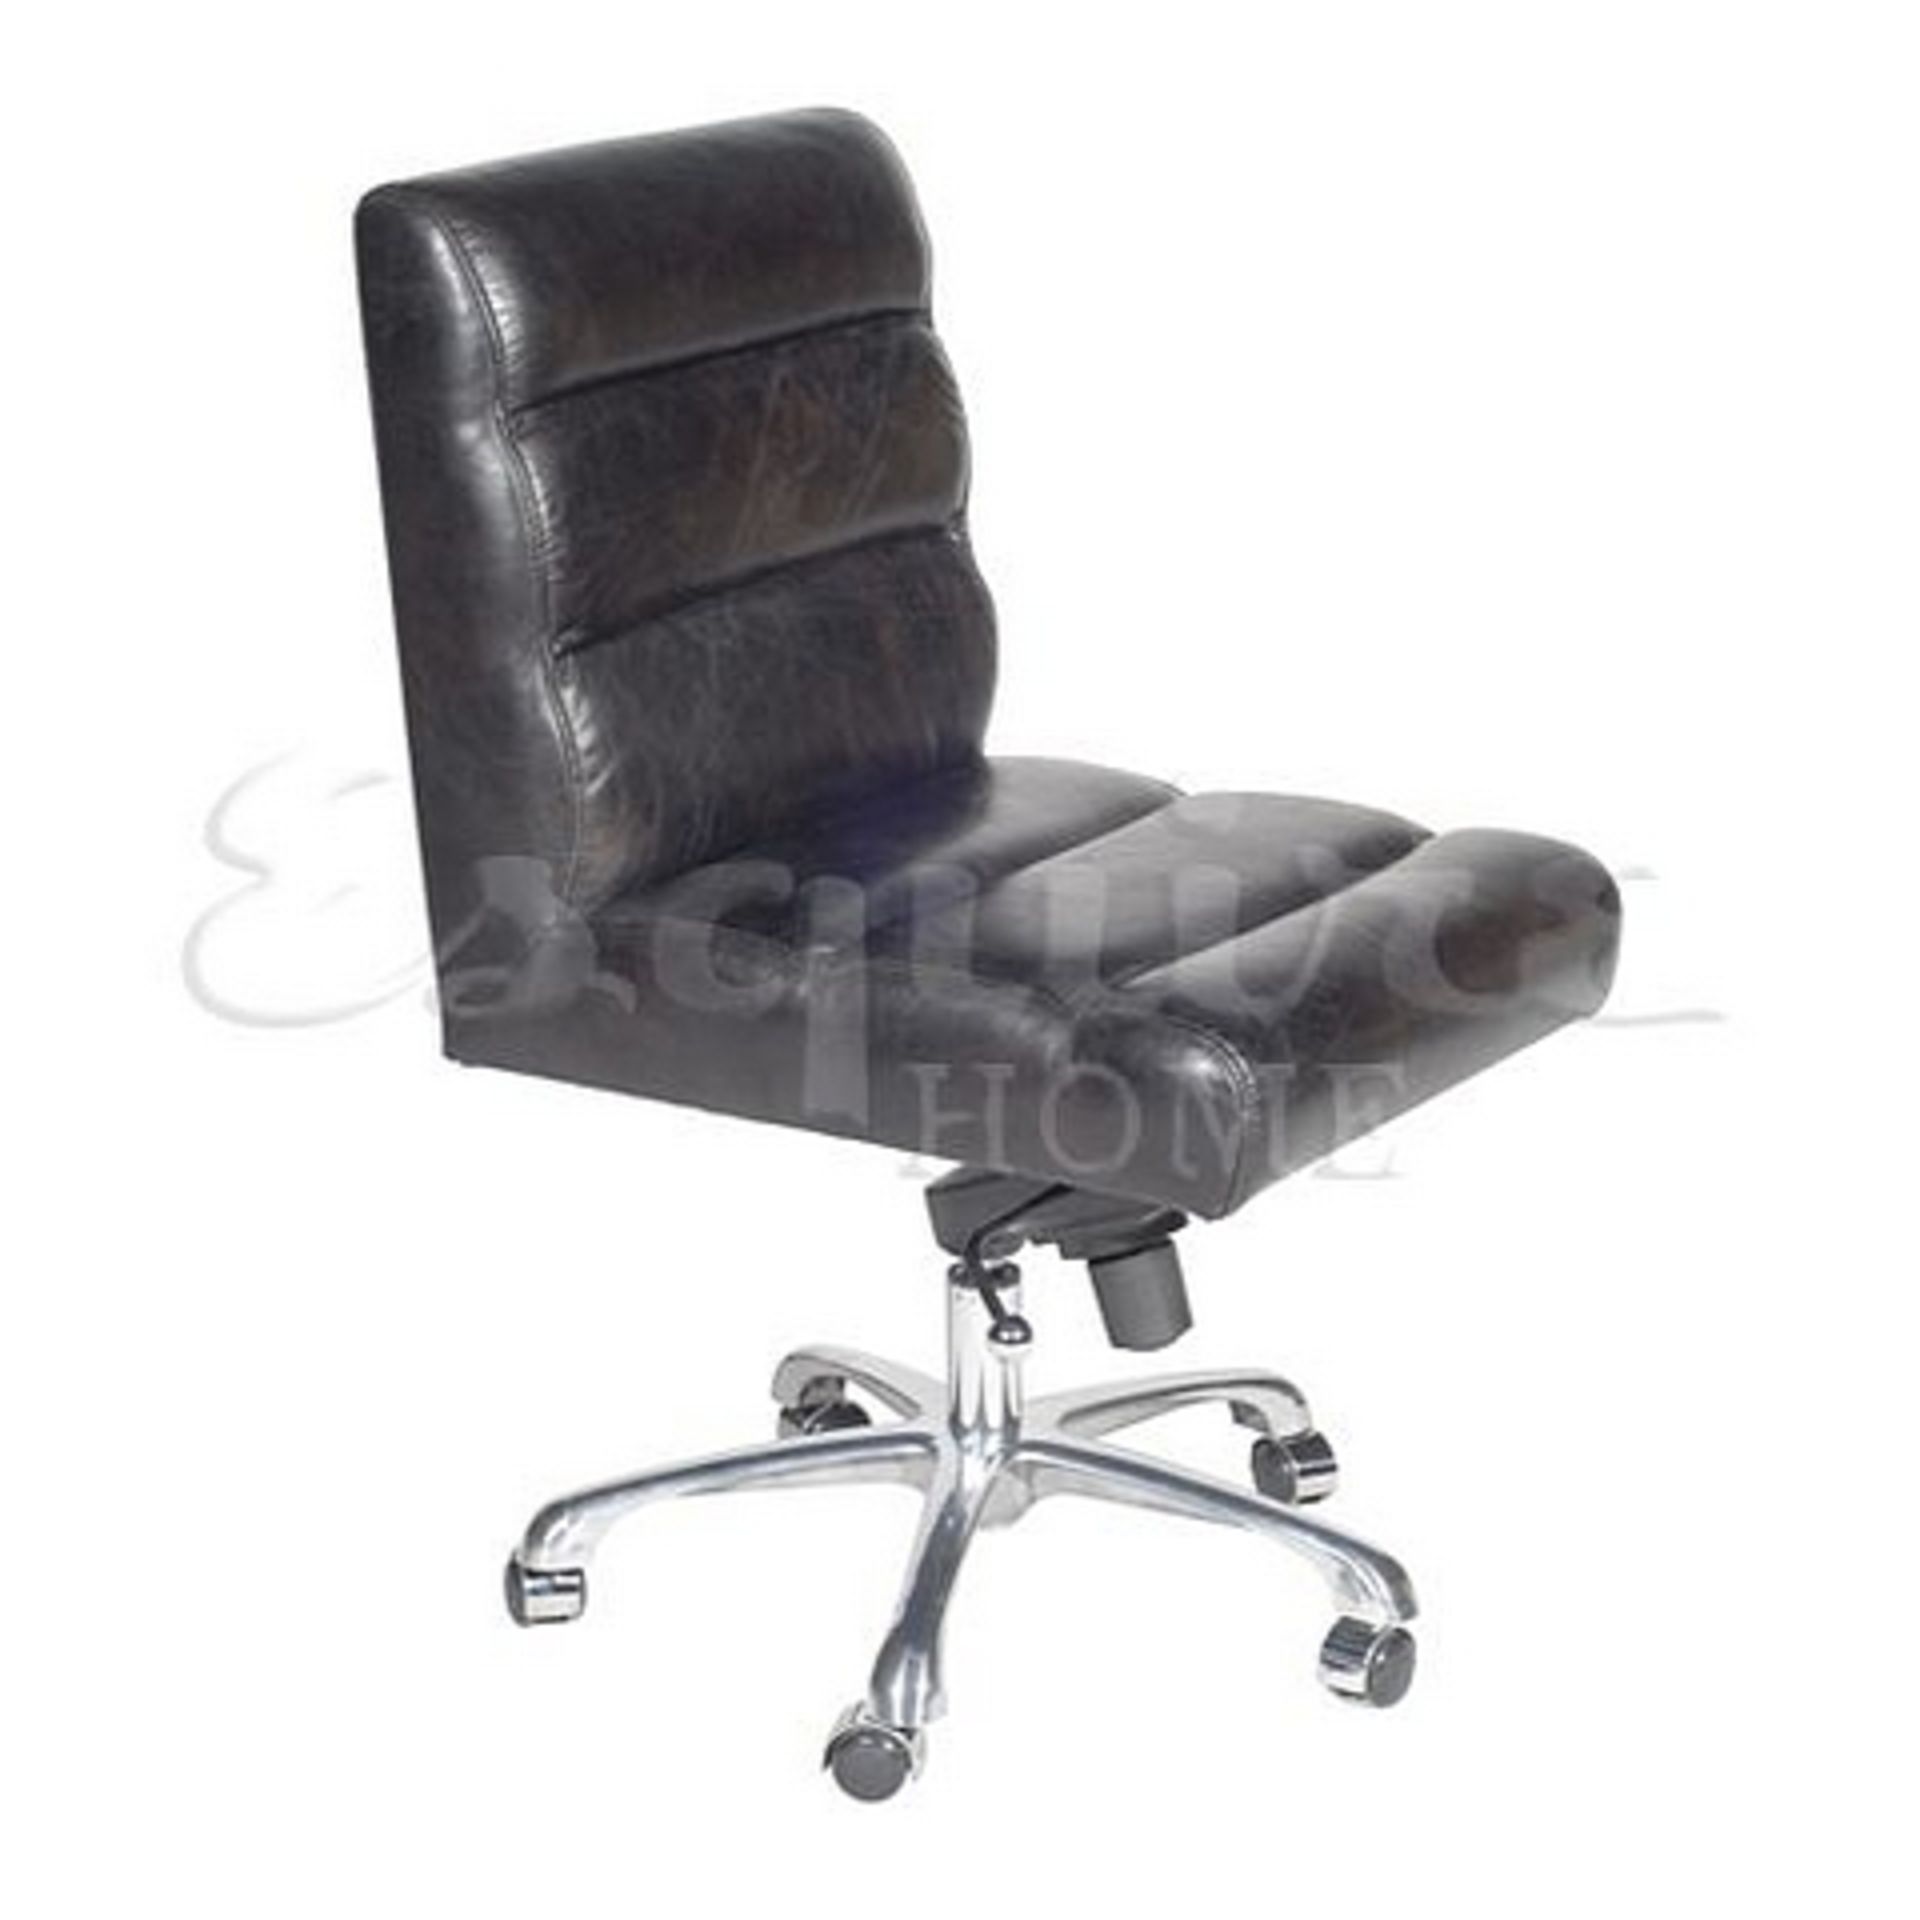 Stinger Desk Chair Black Leather & Blue Jacquard 52 X 67 5 X 98 5cm